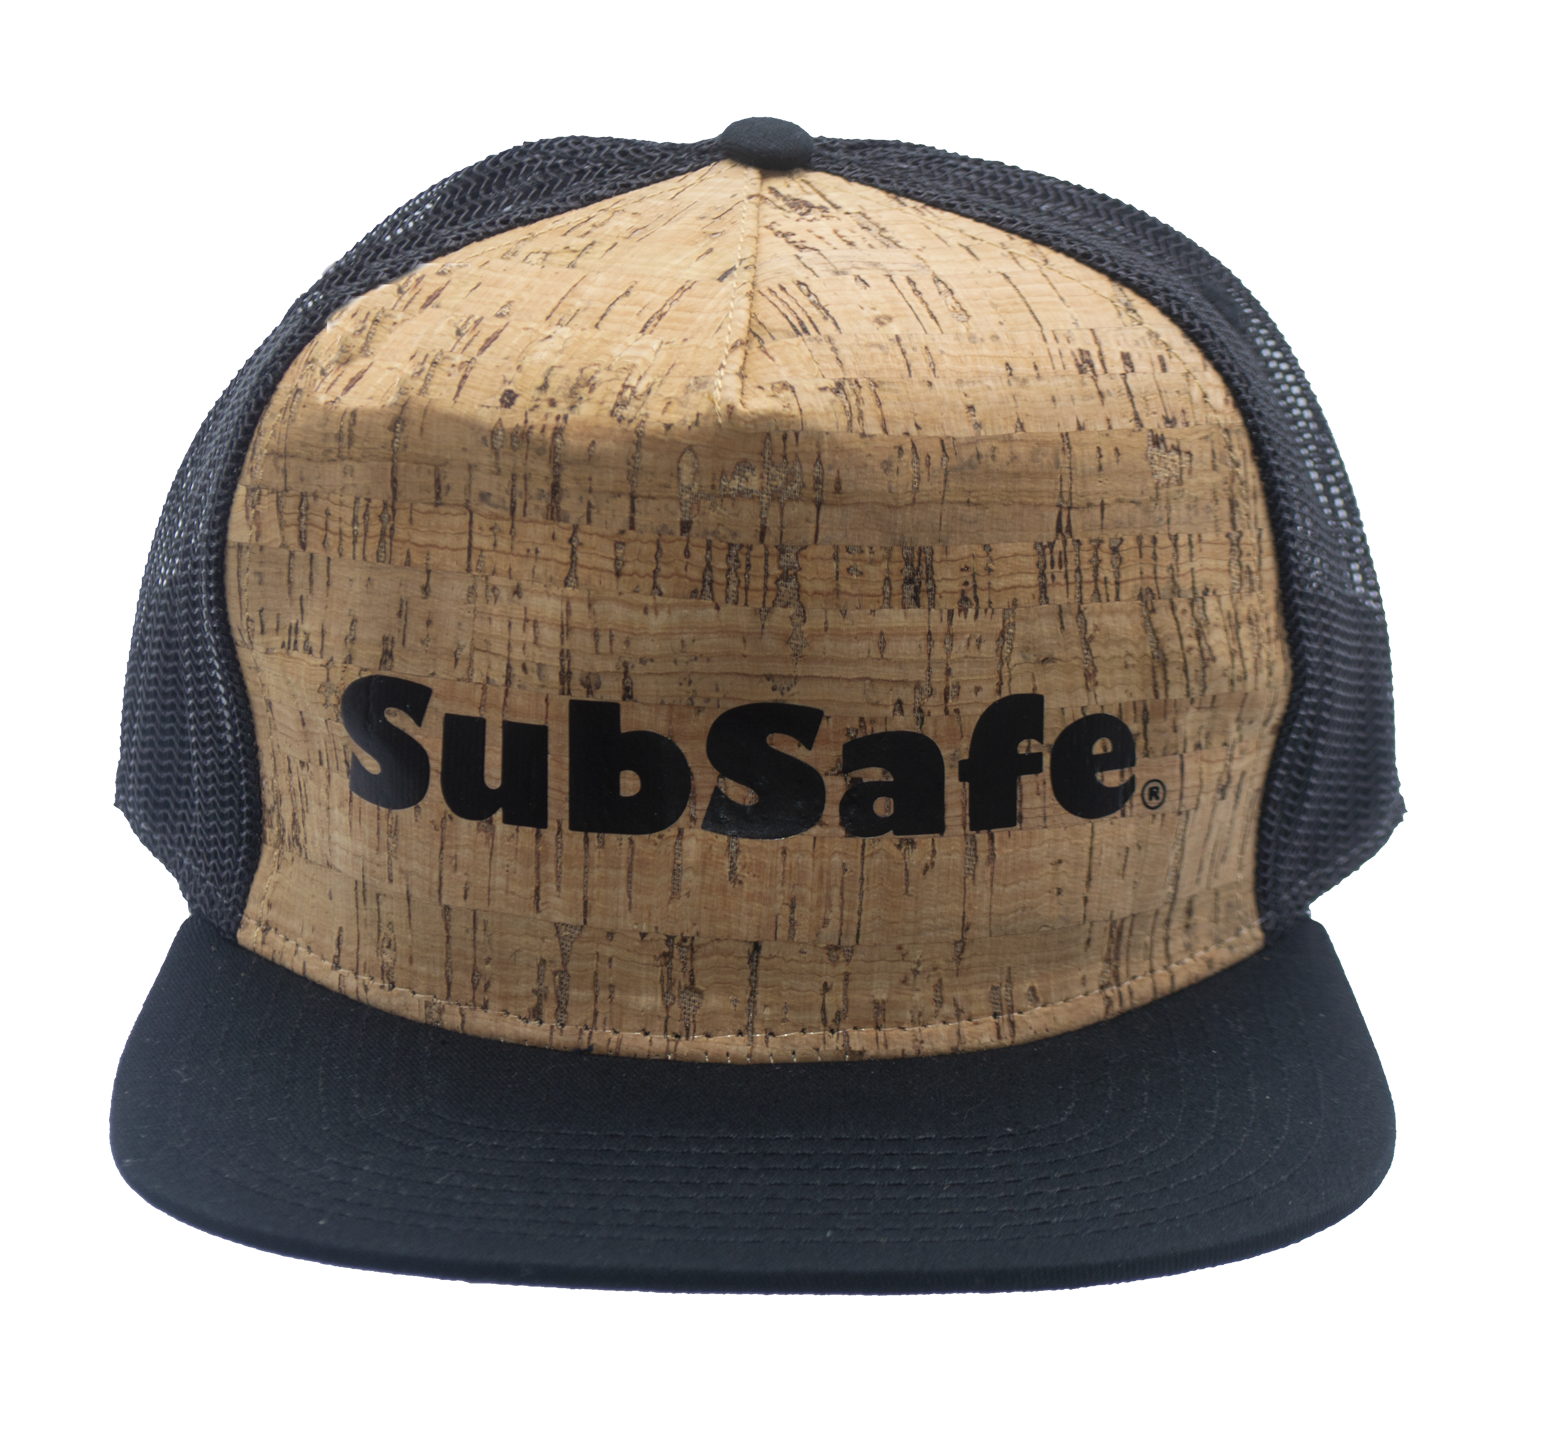 SubSafe Cork Trucker Hat - cork Design with logo